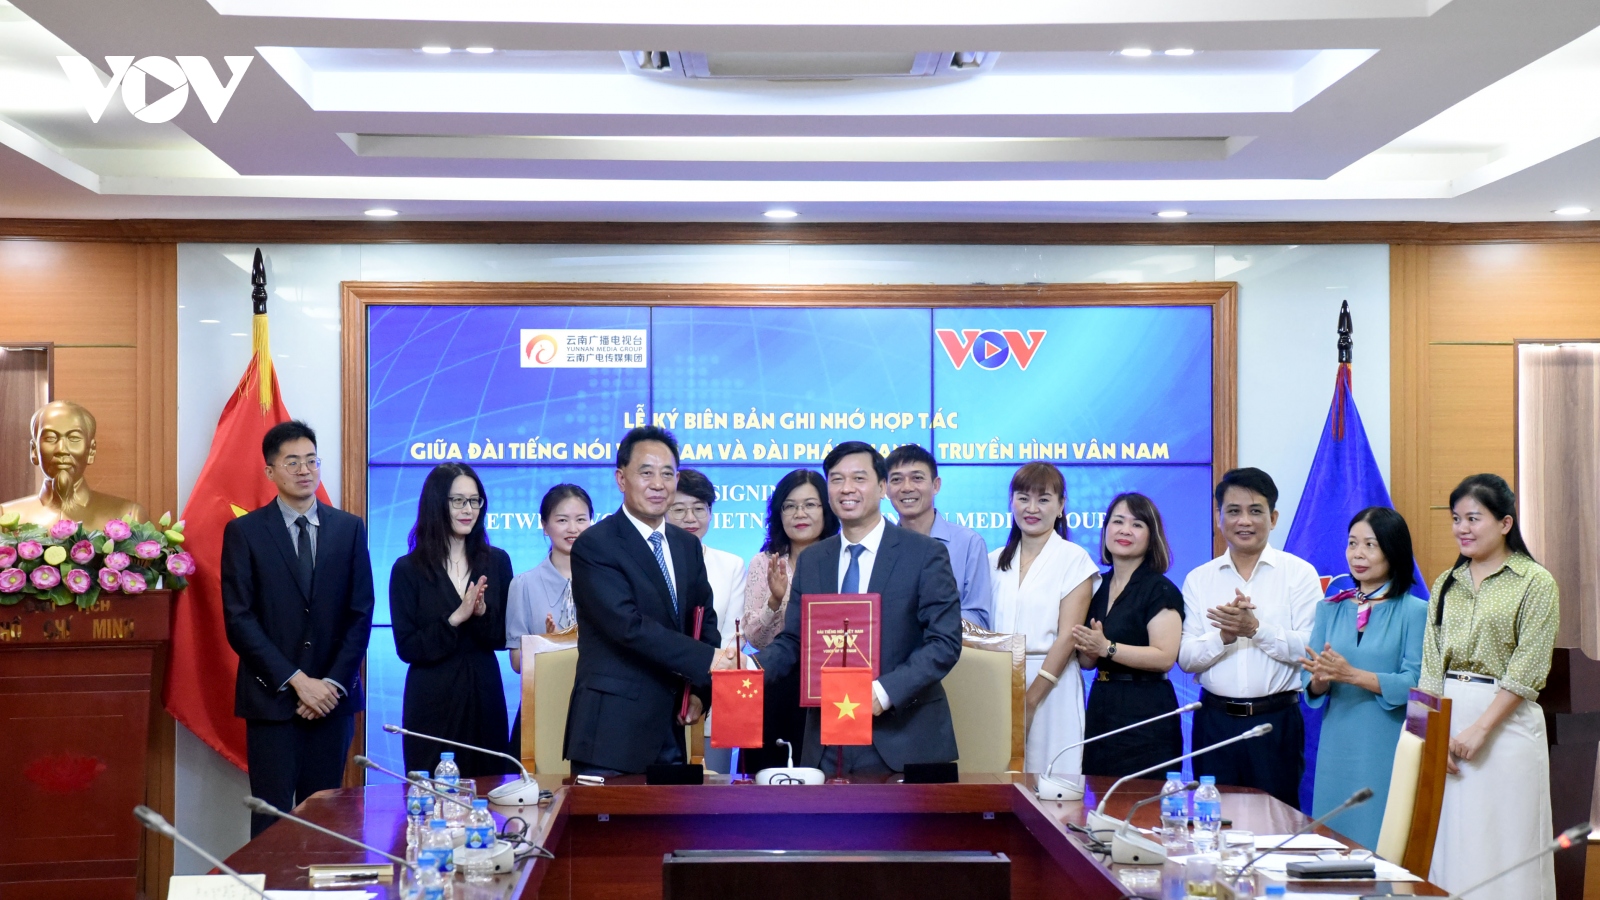 VOV ký thỏa thuận hợp tác với Đài phát thanh truyền hình Vân Nam (Trung Quốc)